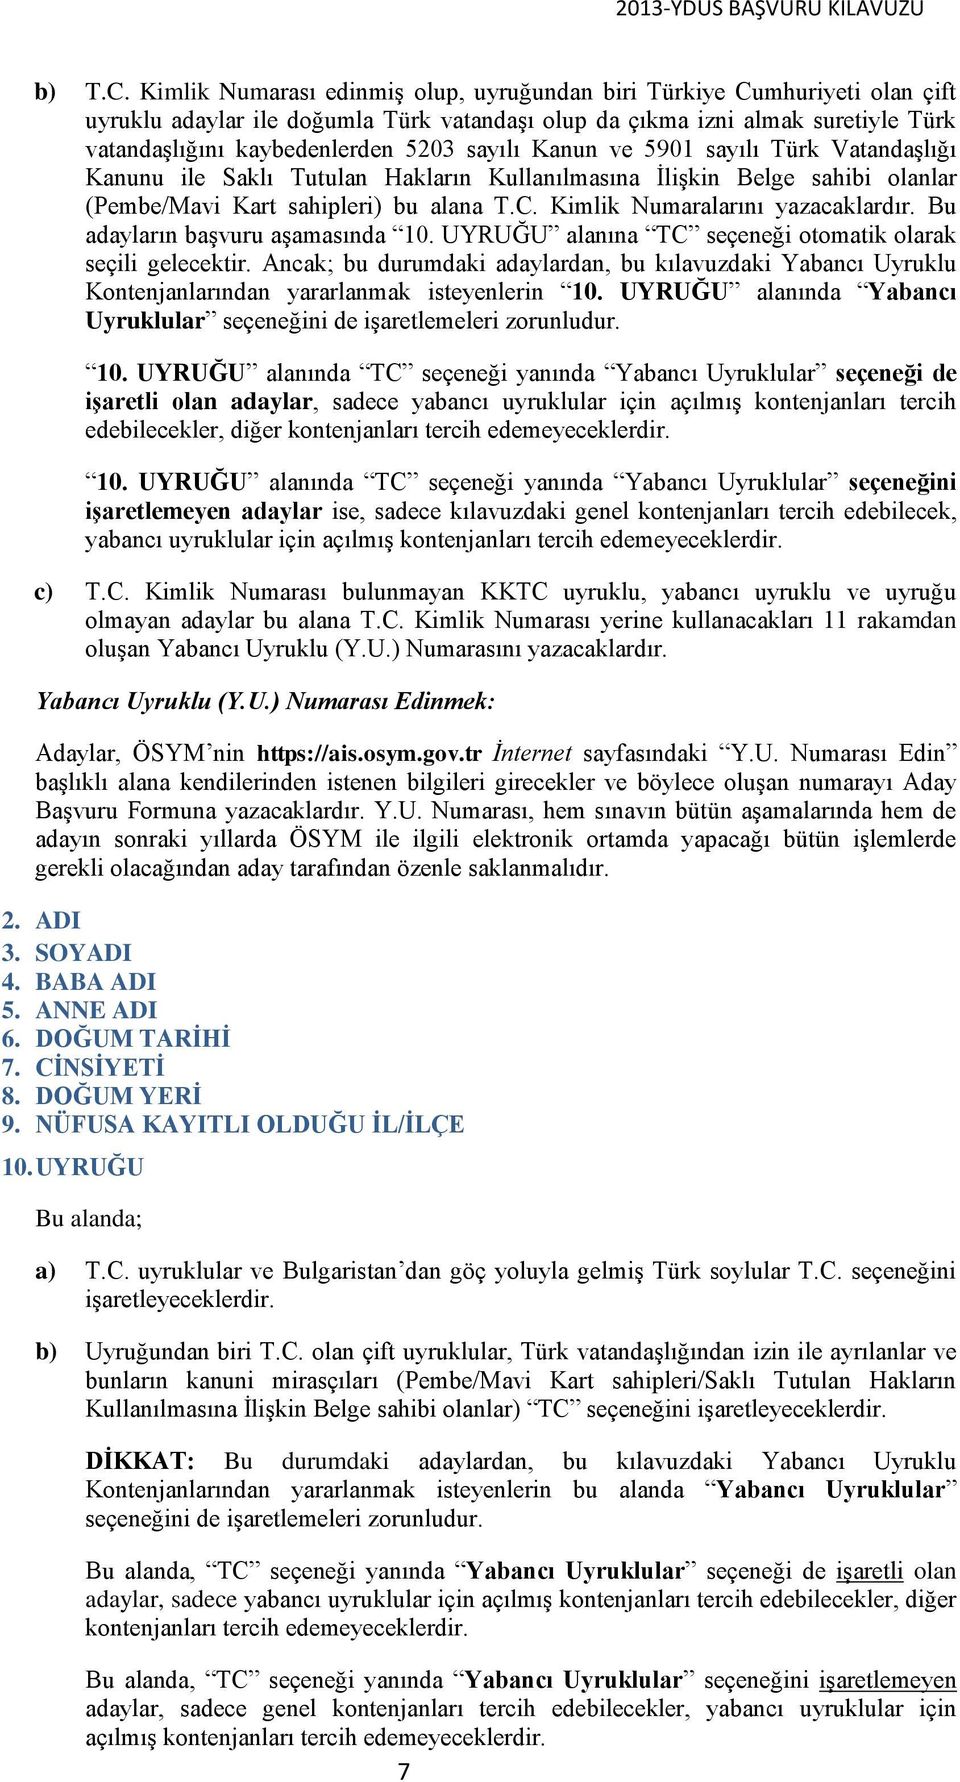 sayılı Kanun ve 5901 sayılı Türk Vatandaşlığı Kanunu ile Saklı Tutulan Hakların Kullanılmasına İlişkin Belge sahibi olanlar (Pembe/Mavi Kart sahipleri) bu alana T.C. Kimlik Numaralarını yazacaklardır.